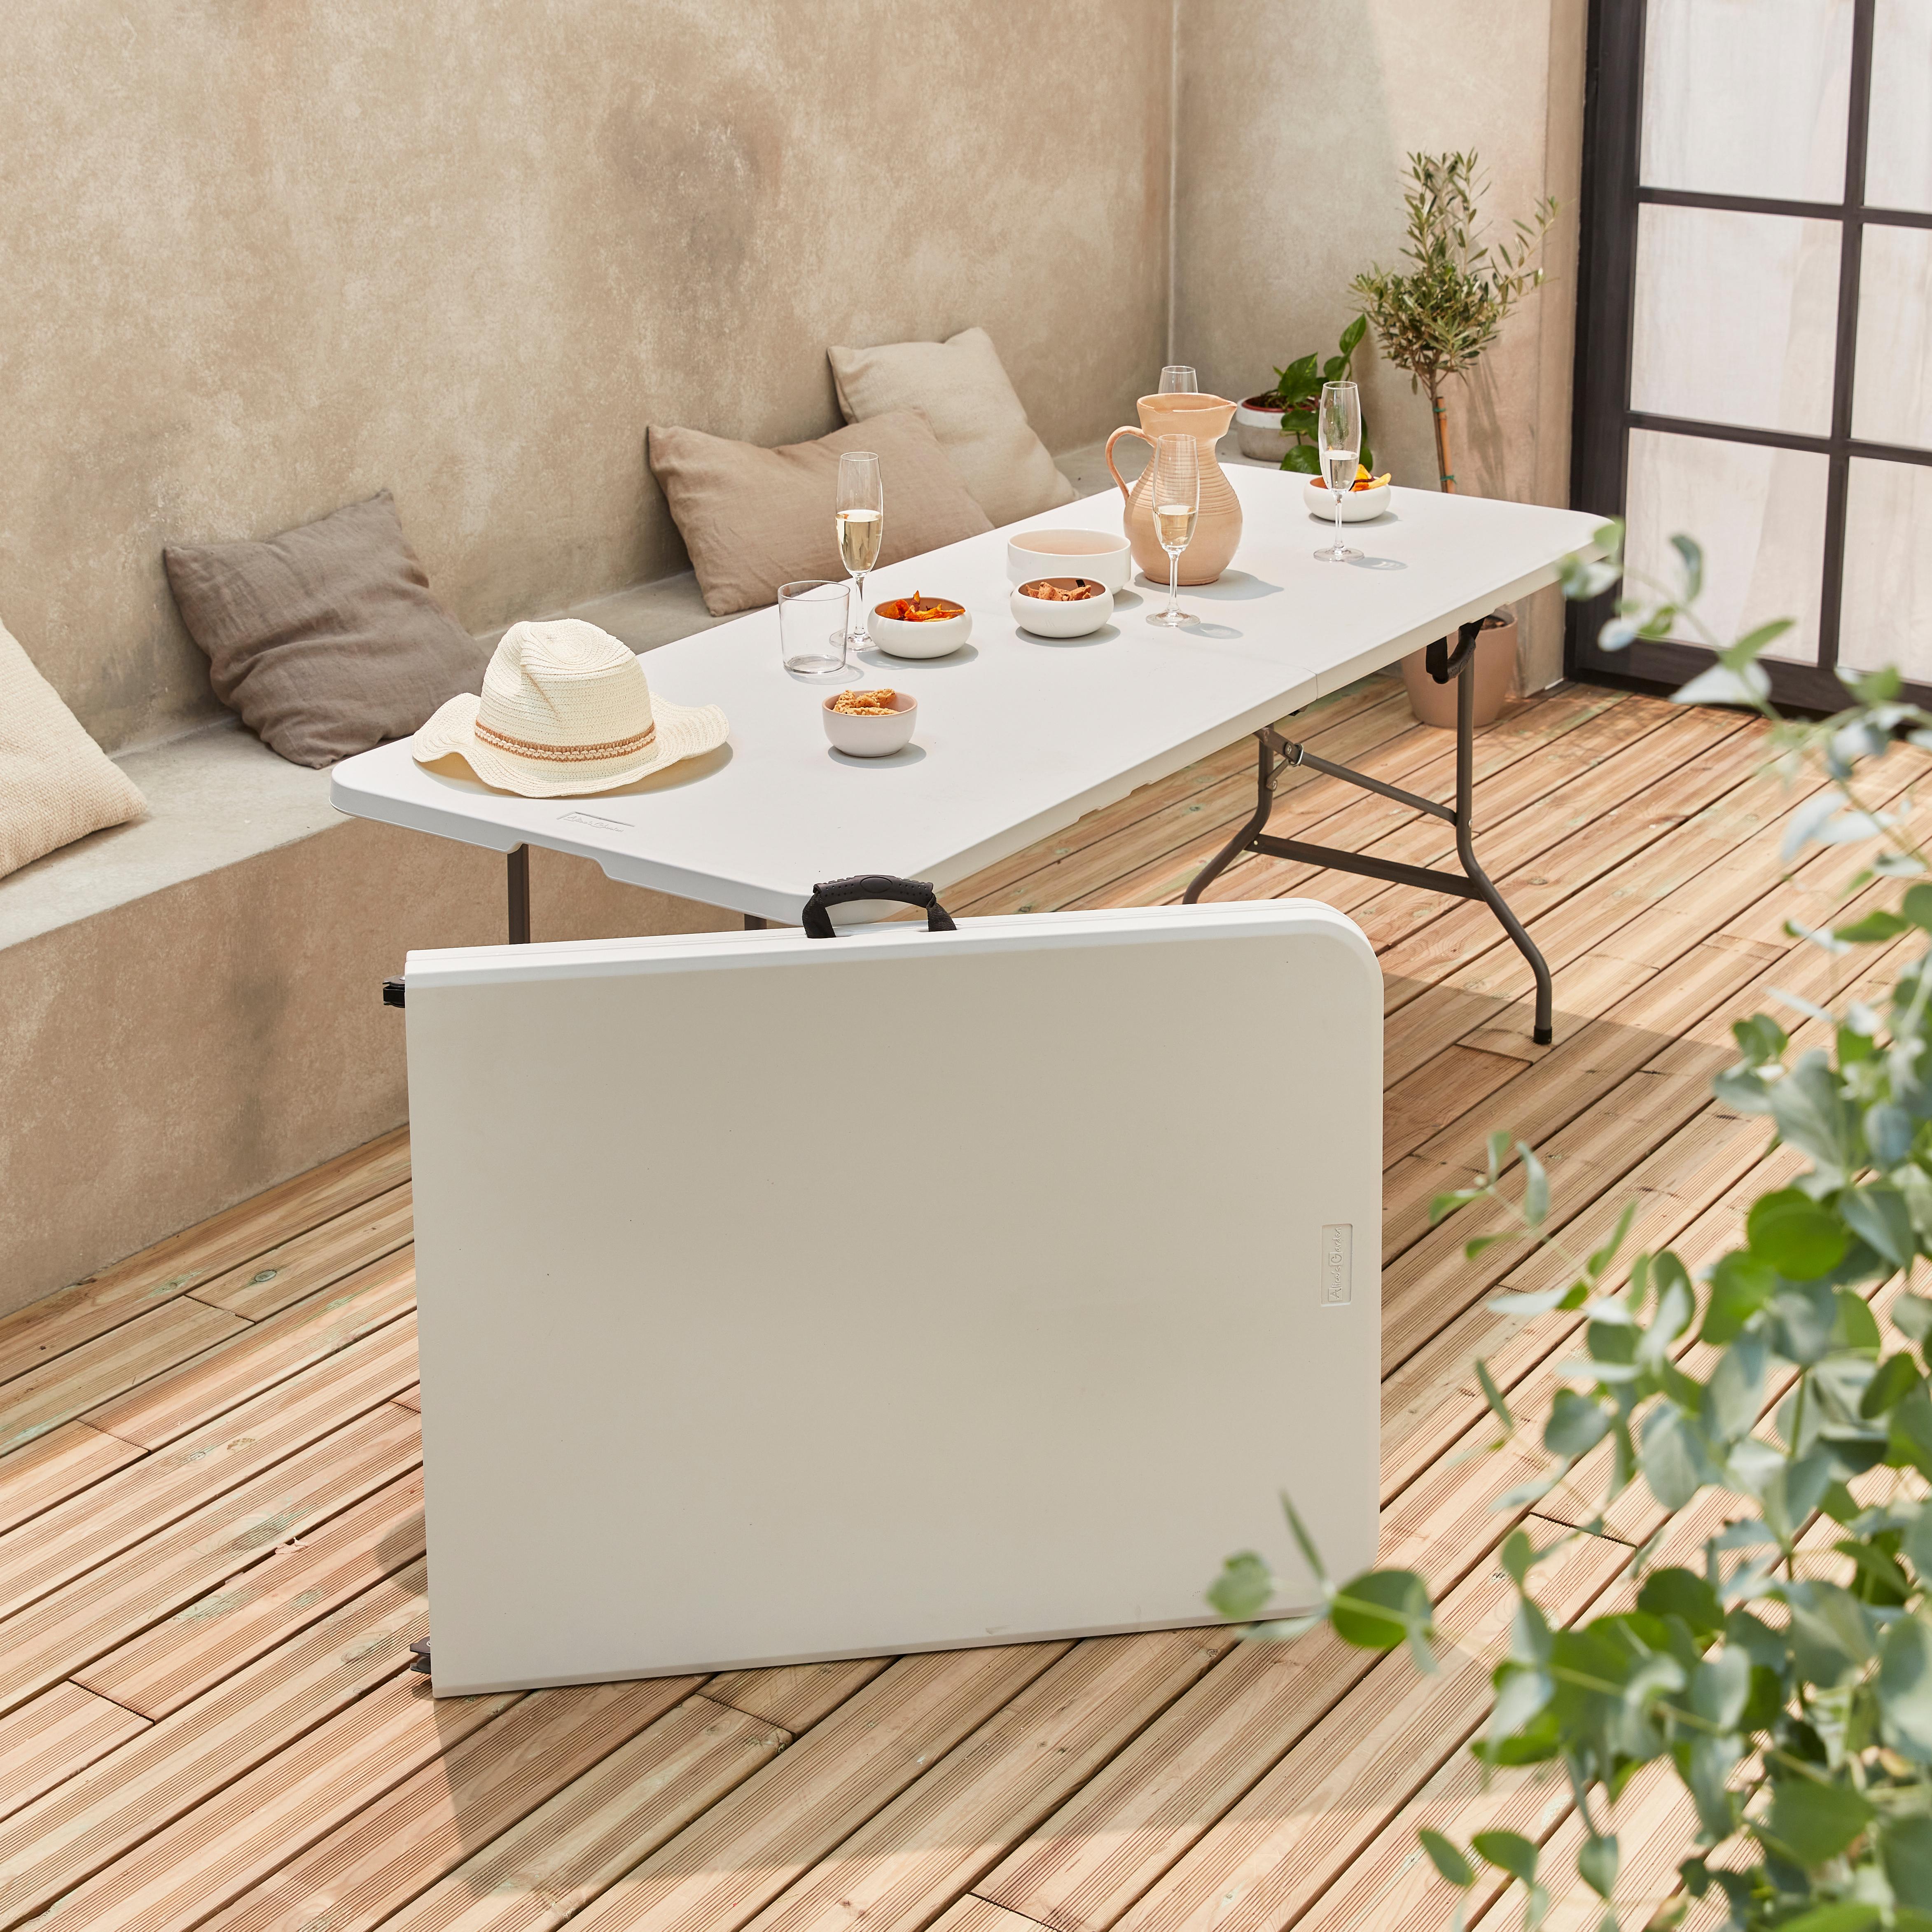 visueel salami wasmiddel Alice's Garden Opvouwbare partytafel - Set van 2 - 180x70cm - kunststof -  wit